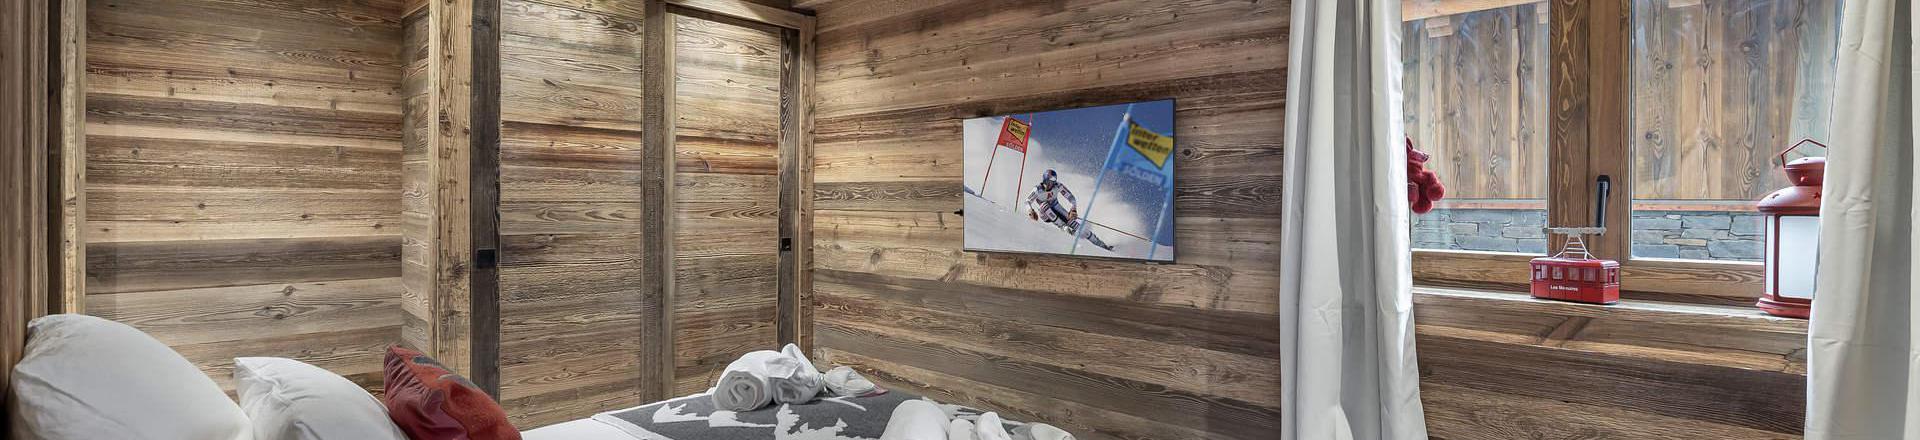 Rent in ski resort 6 room chalet 10 people - Chalet Coco Marcel - Saint Martin de Belleville - Bedroom